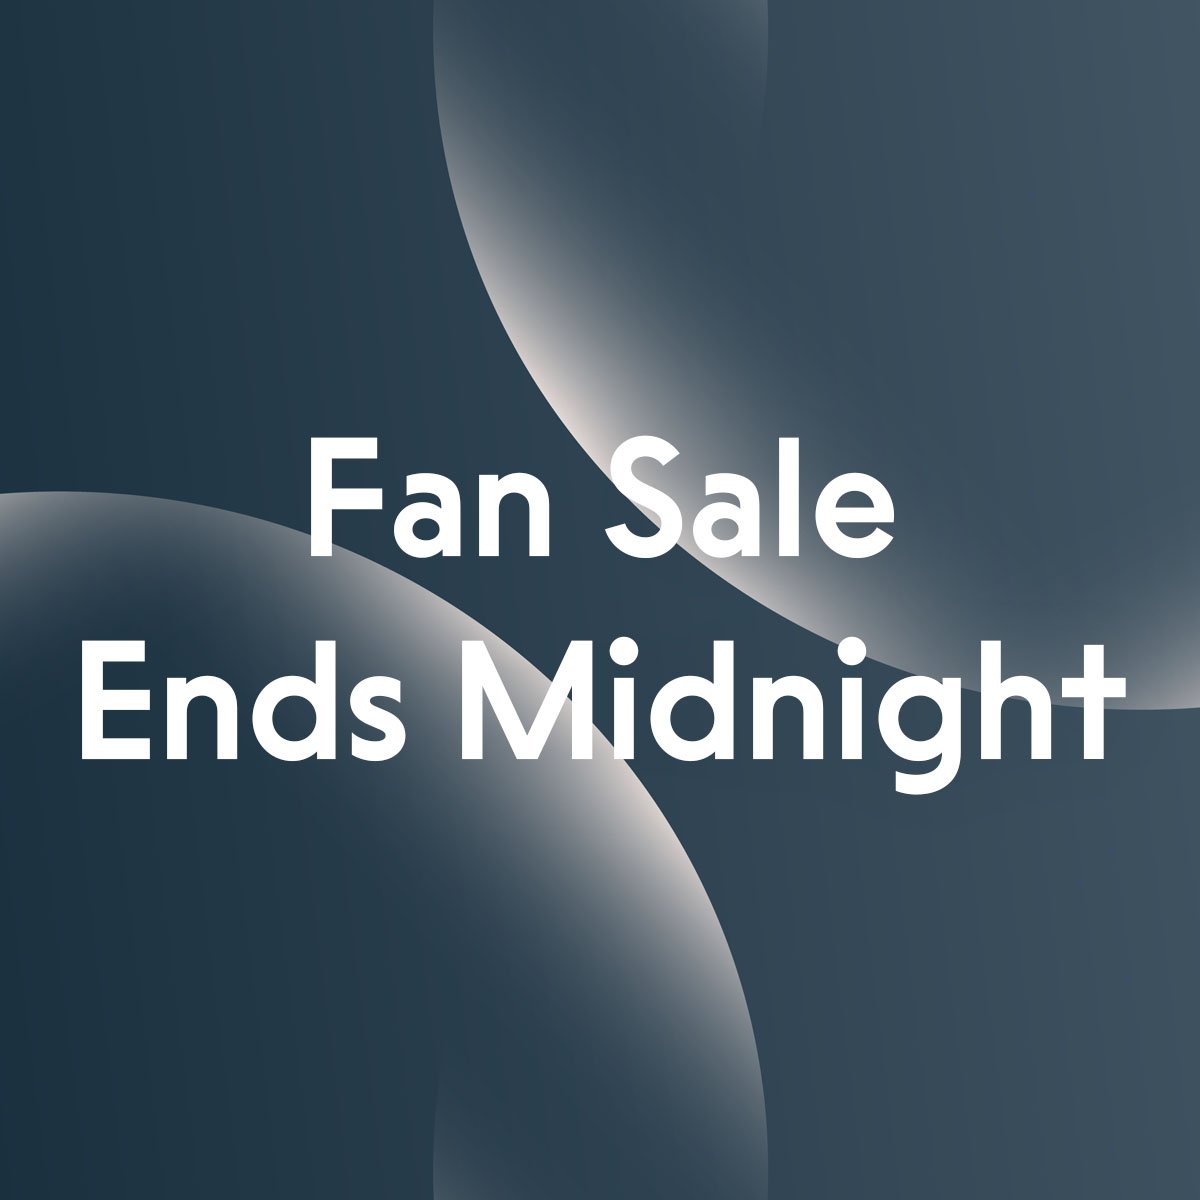 Fan Sale Ends Midnight.